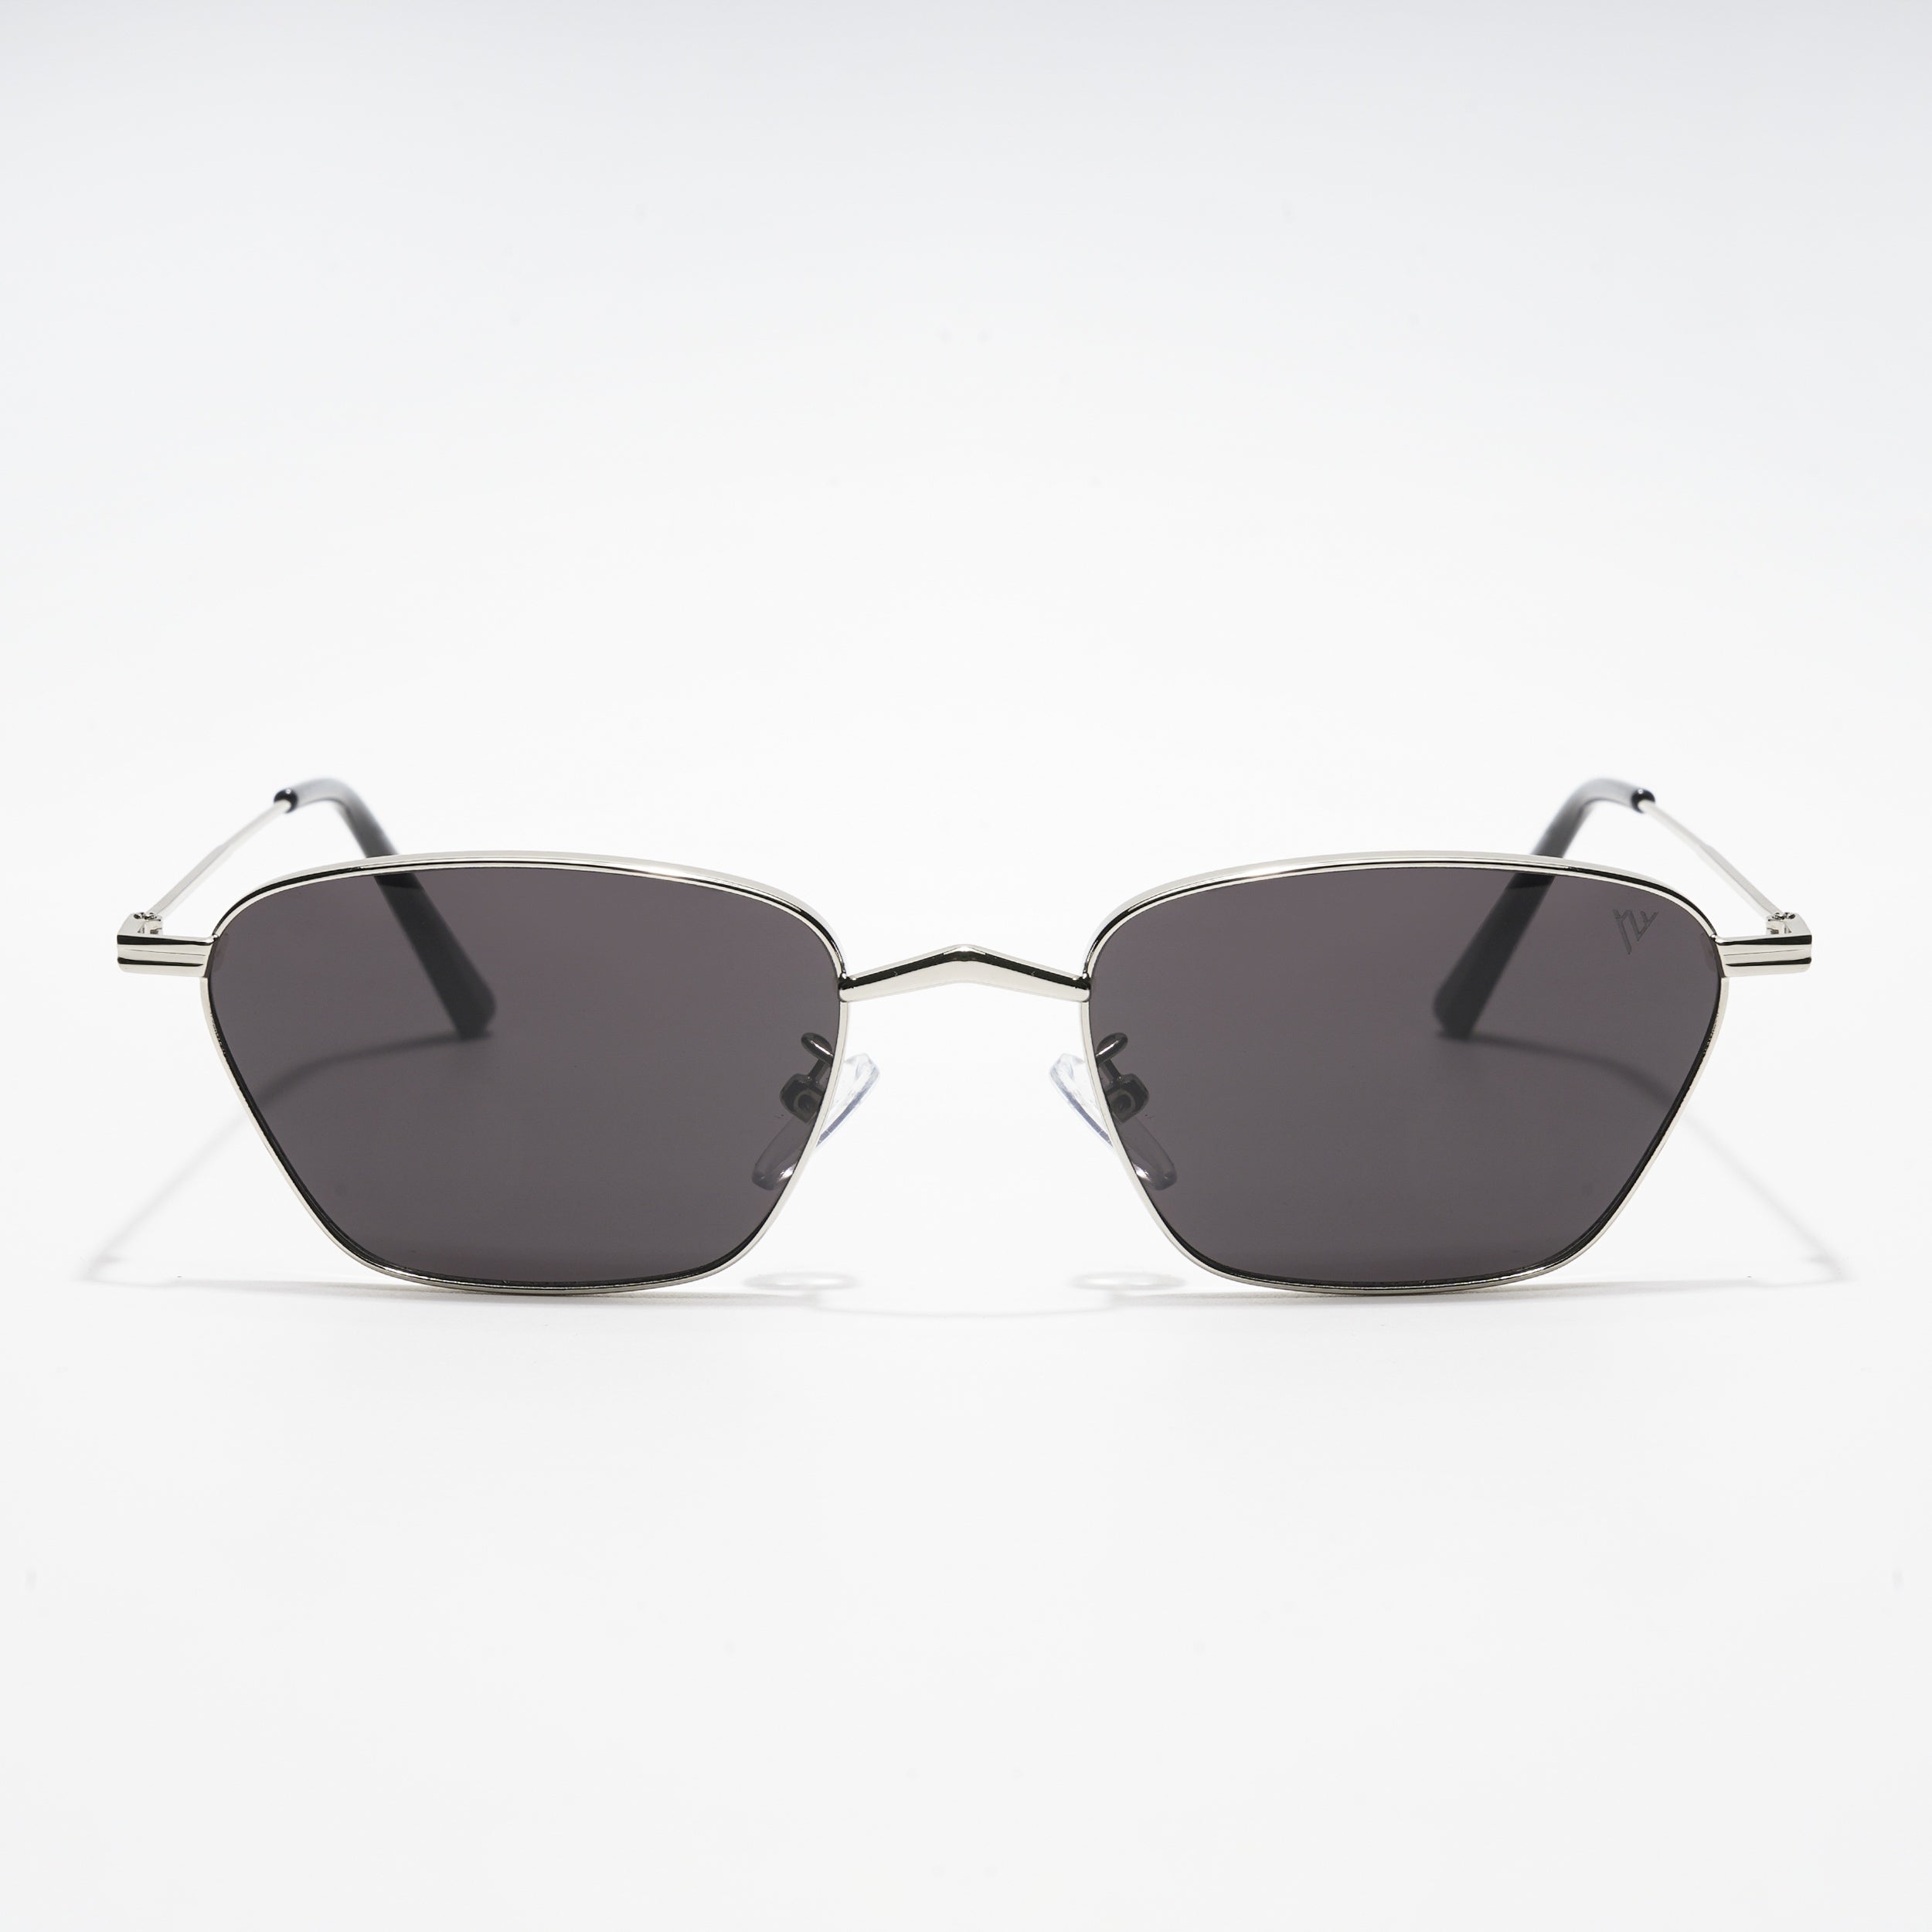 Voyage Black Silver Retro Square Sunglasses - MG3456